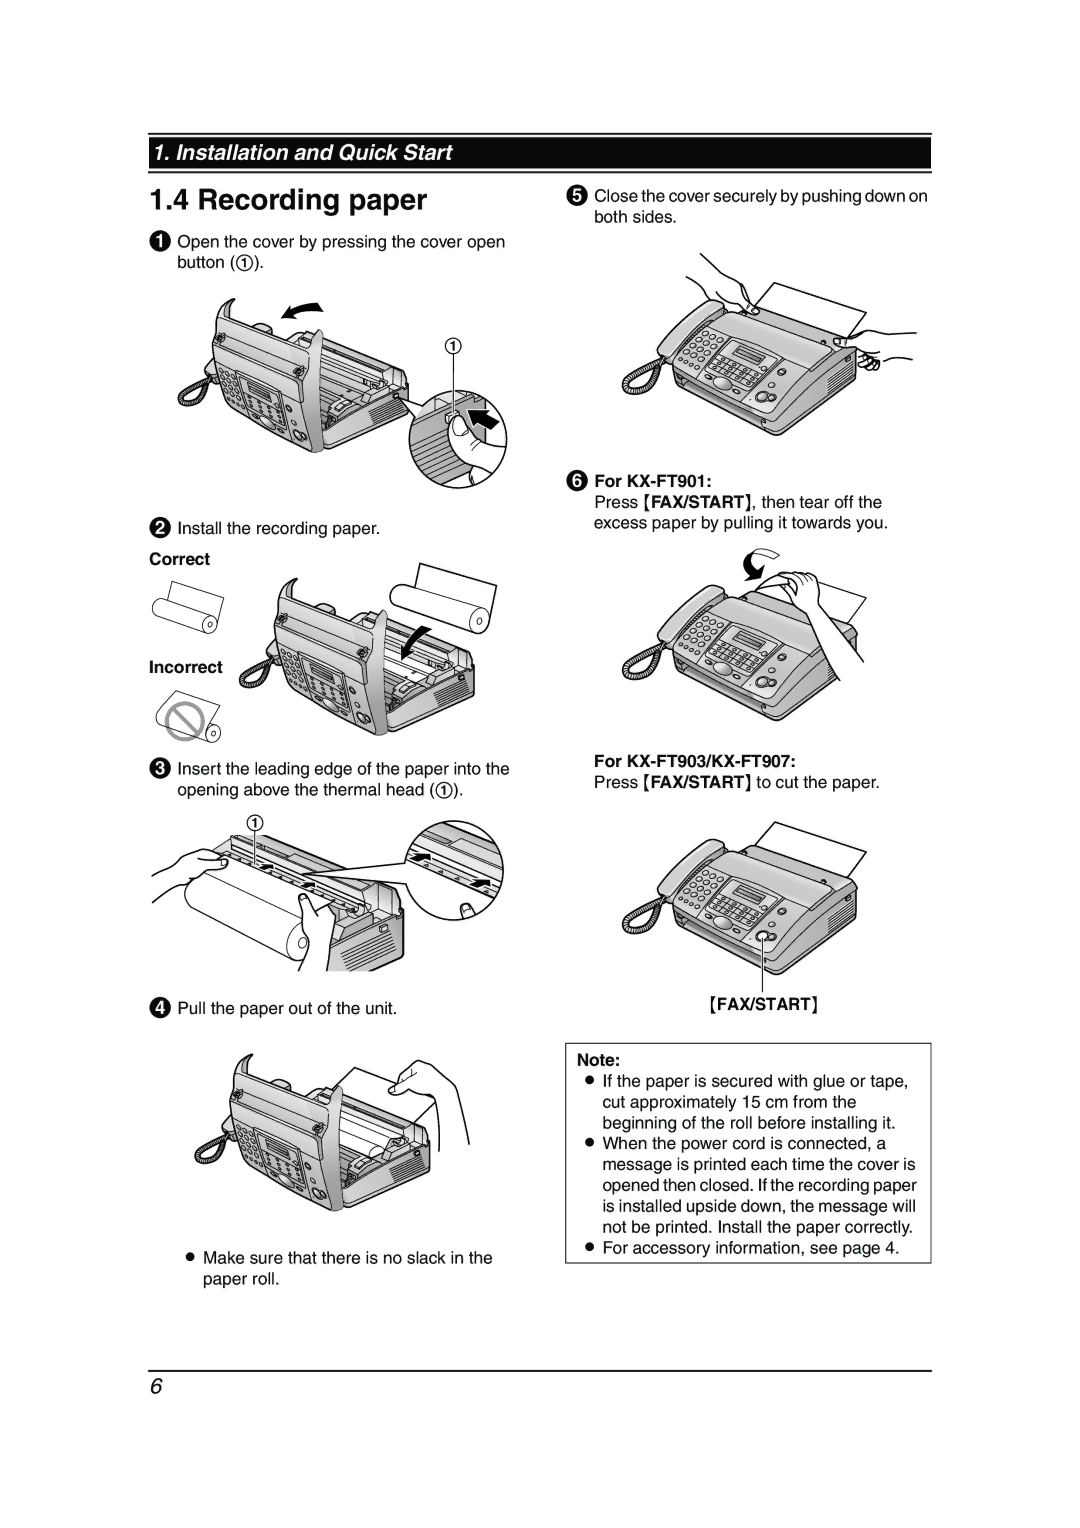 Panasonic KX-FT901BX manual Recording paper, Correct Incorrect, For KX-FT901, For KX-FT903/KX-FT907, Fax/Start 